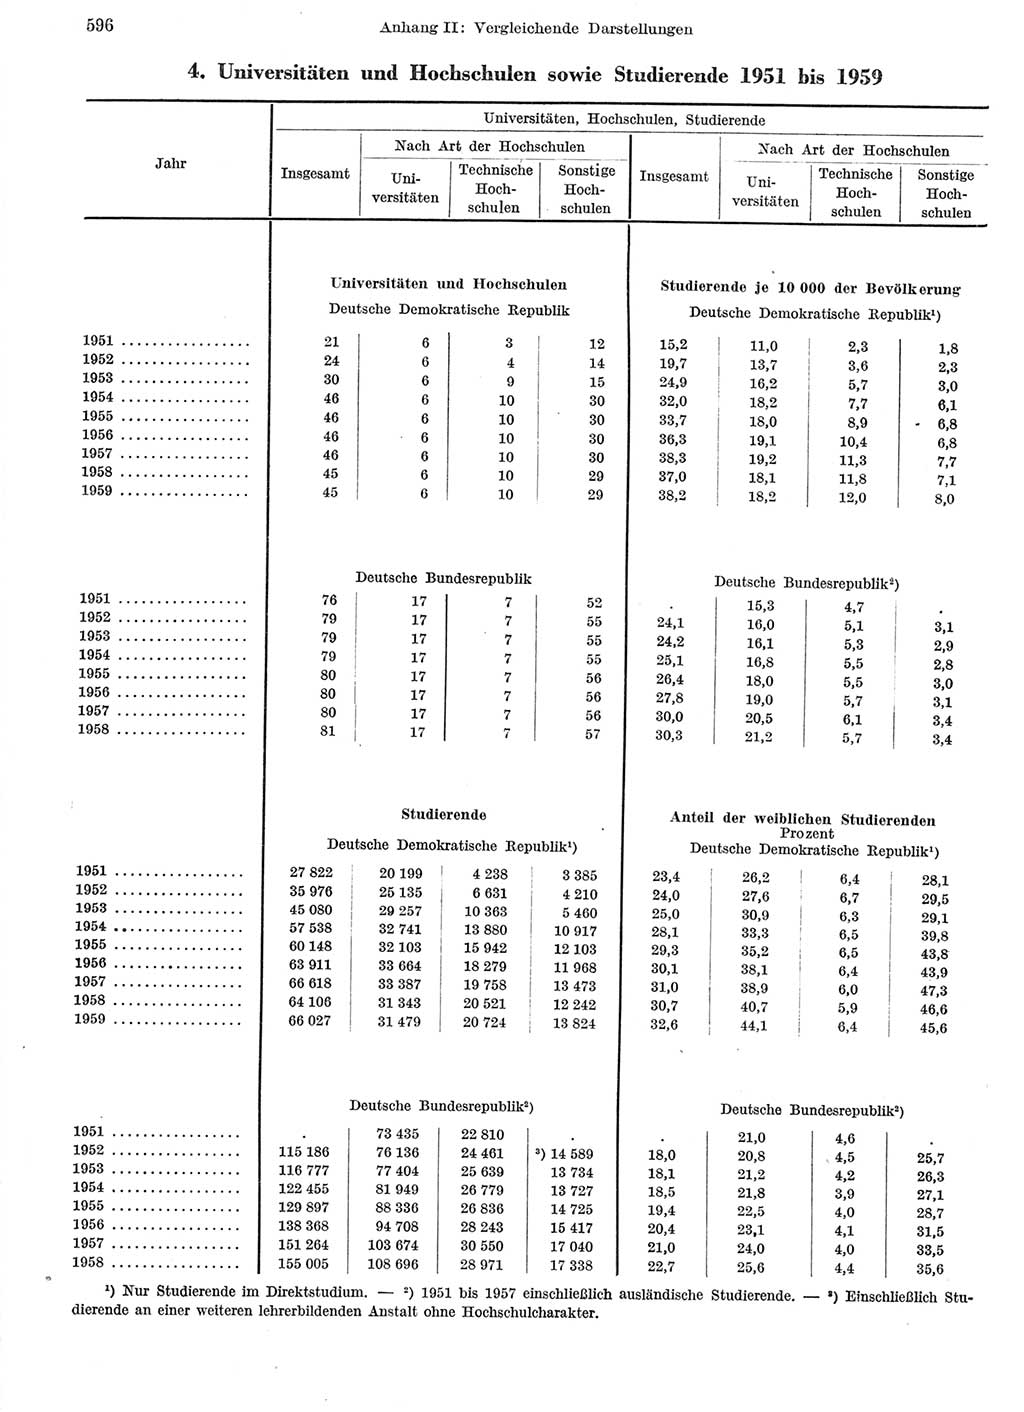 Statistisches Jahrbuch der Deutschen Demokratischen Republik (DDR) 1959, Seite 596 (Stat. Jb. DDR 1959, S. 596)